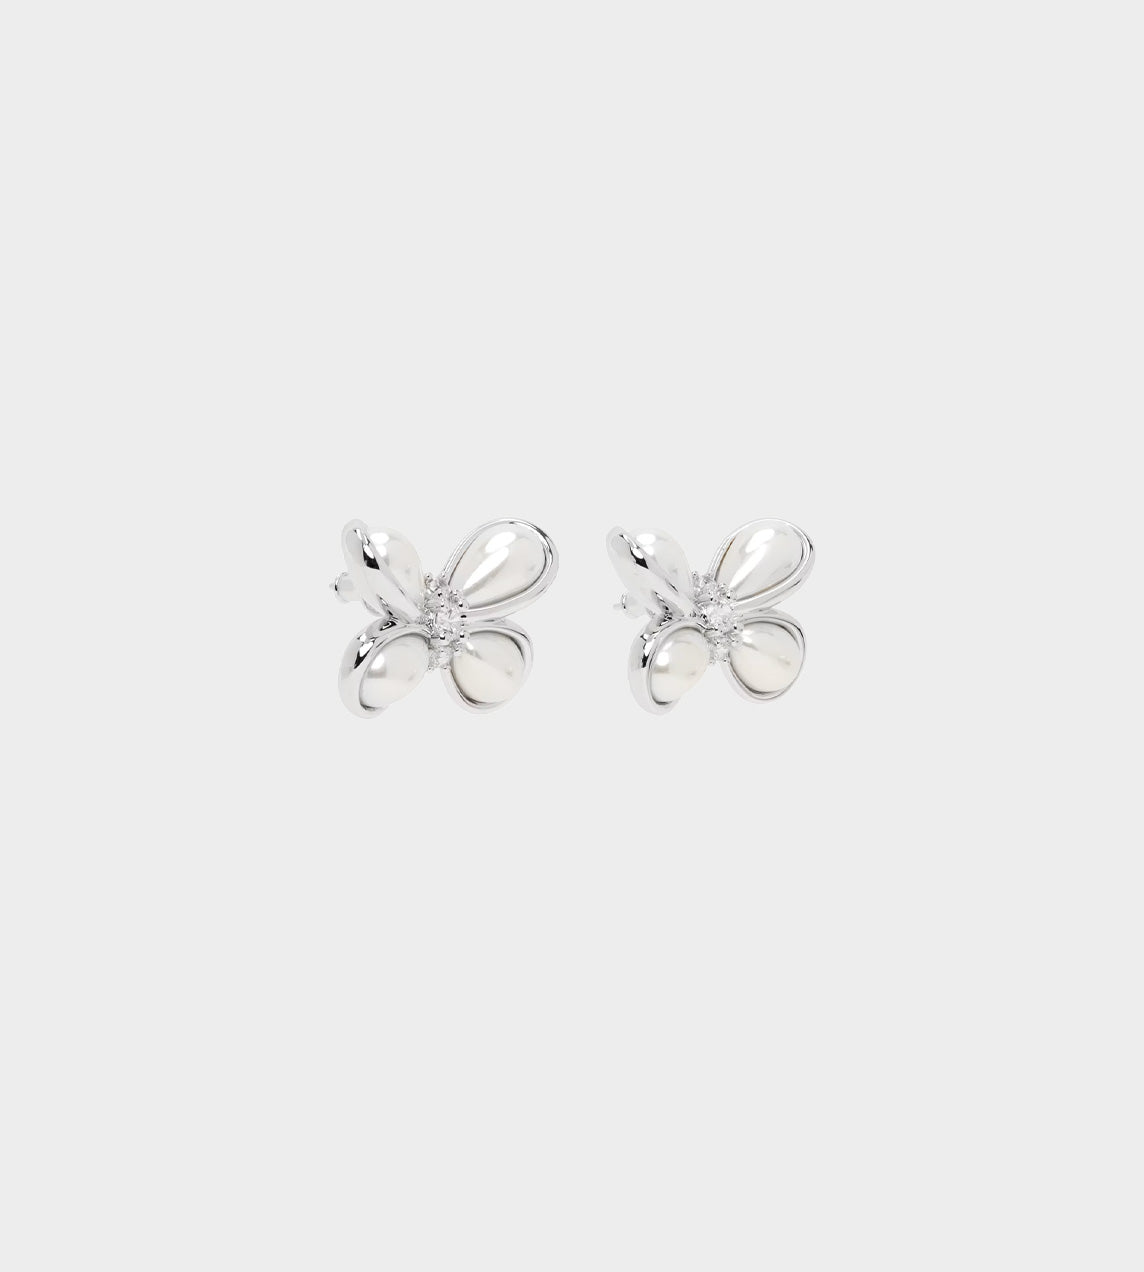 ShuShu/Tong - Pearl Butterfly Flower Earrings